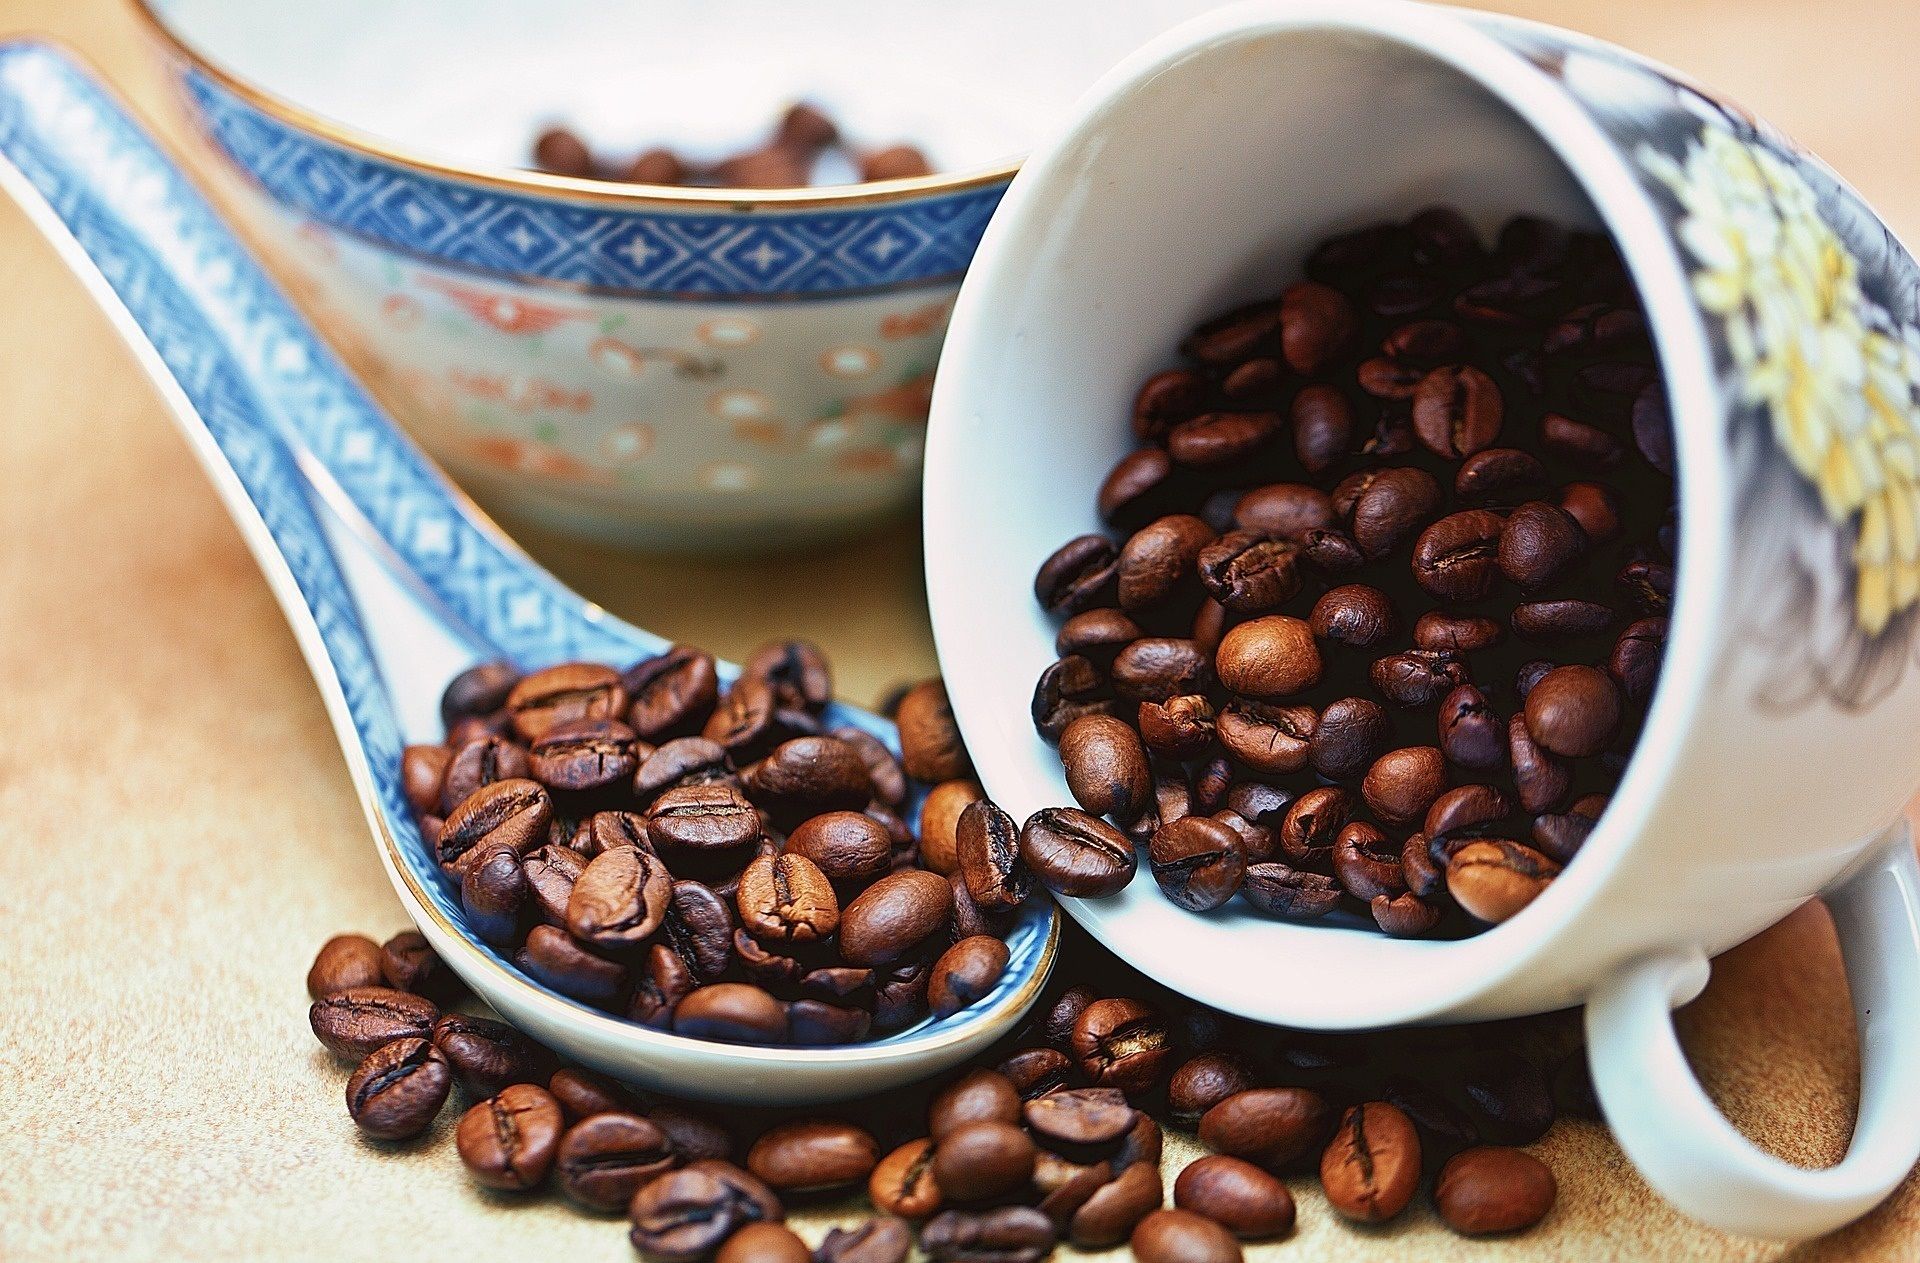 Tomar café puede ayudar a reducir la gravedad del hígado graso en diabéticos